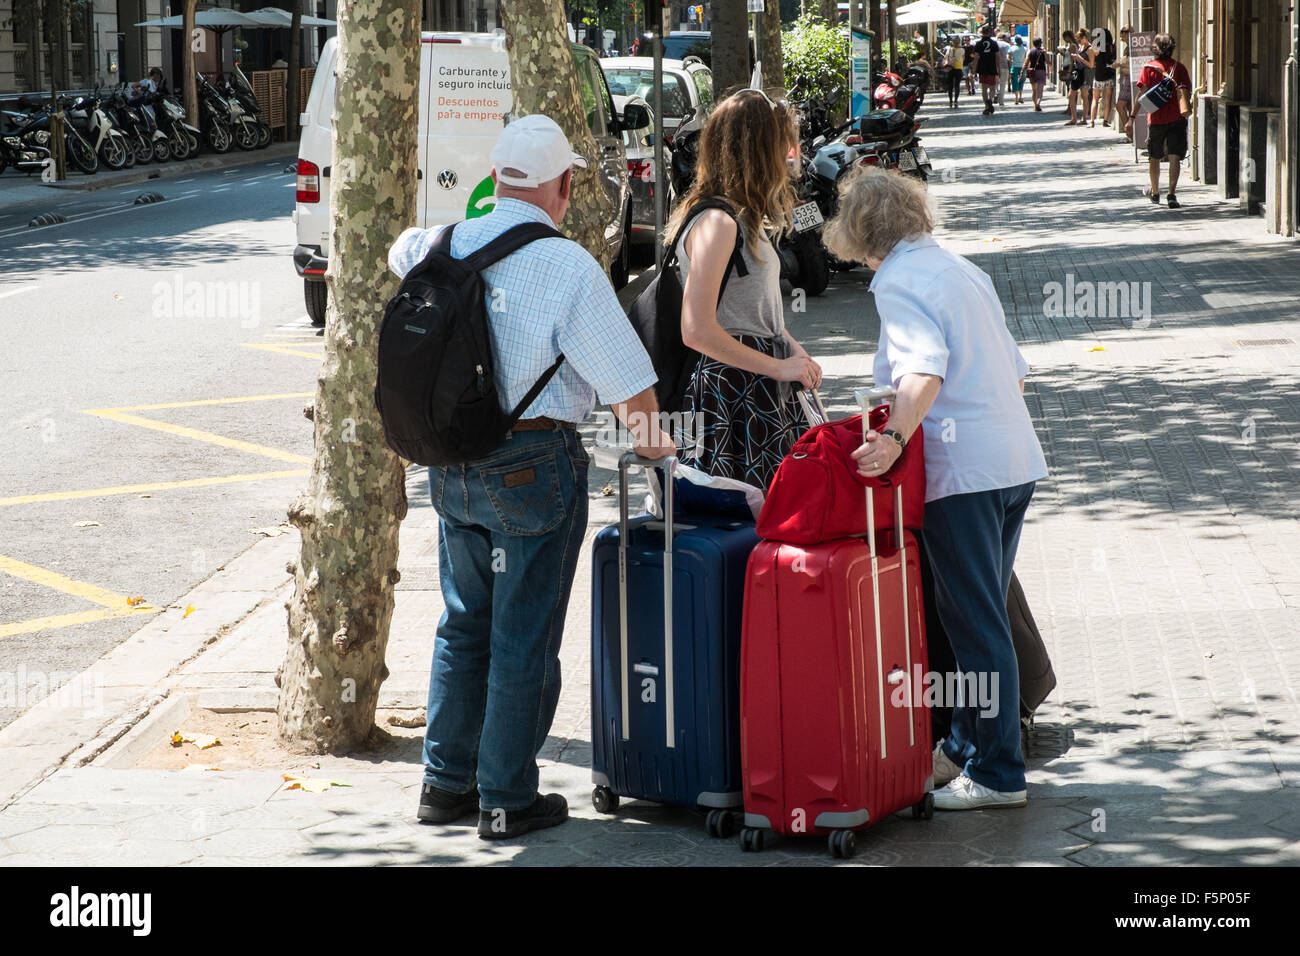 Les touristes avec de grandes valises bagages dans le centre de Barcelone, Catalogne, Espagne Banque D'Images